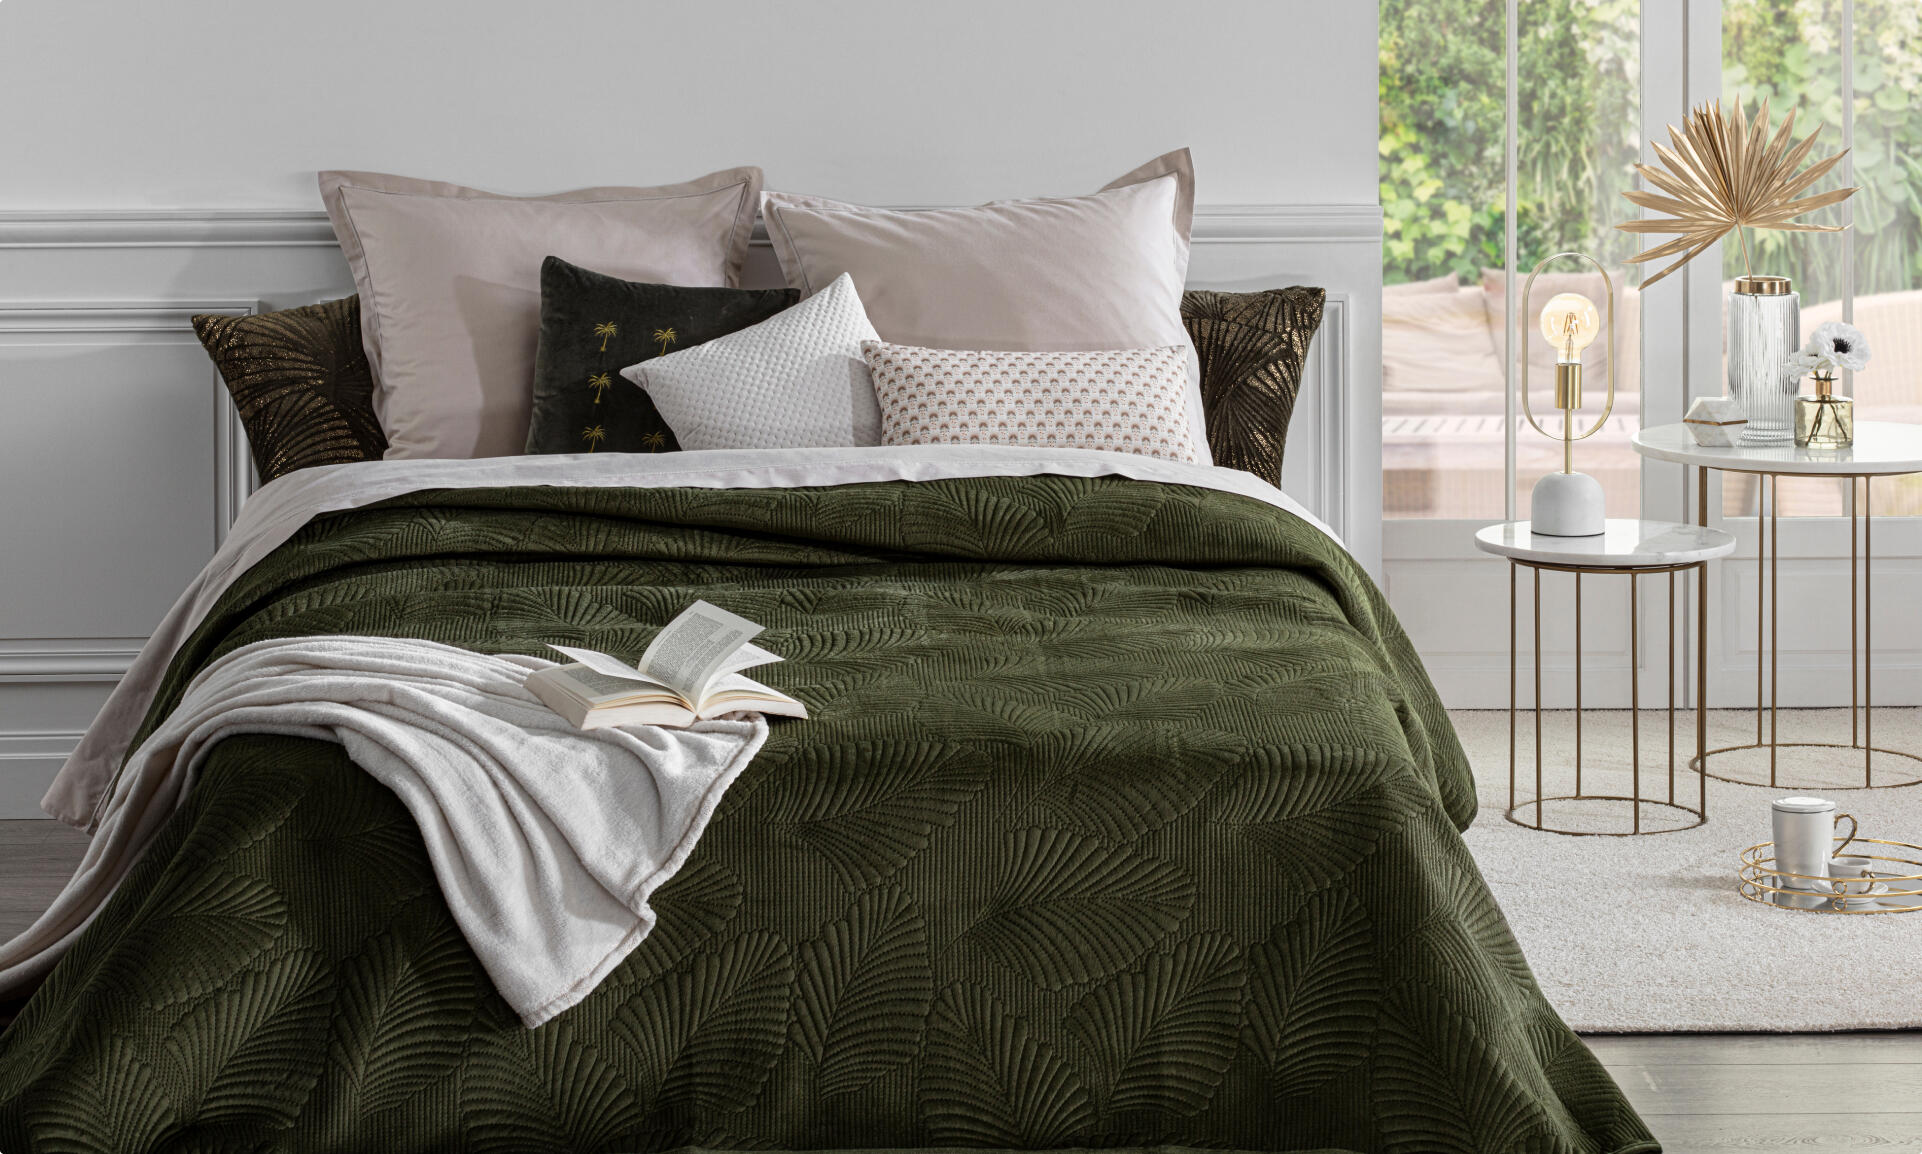 Come coprire il tuo letto con stile?